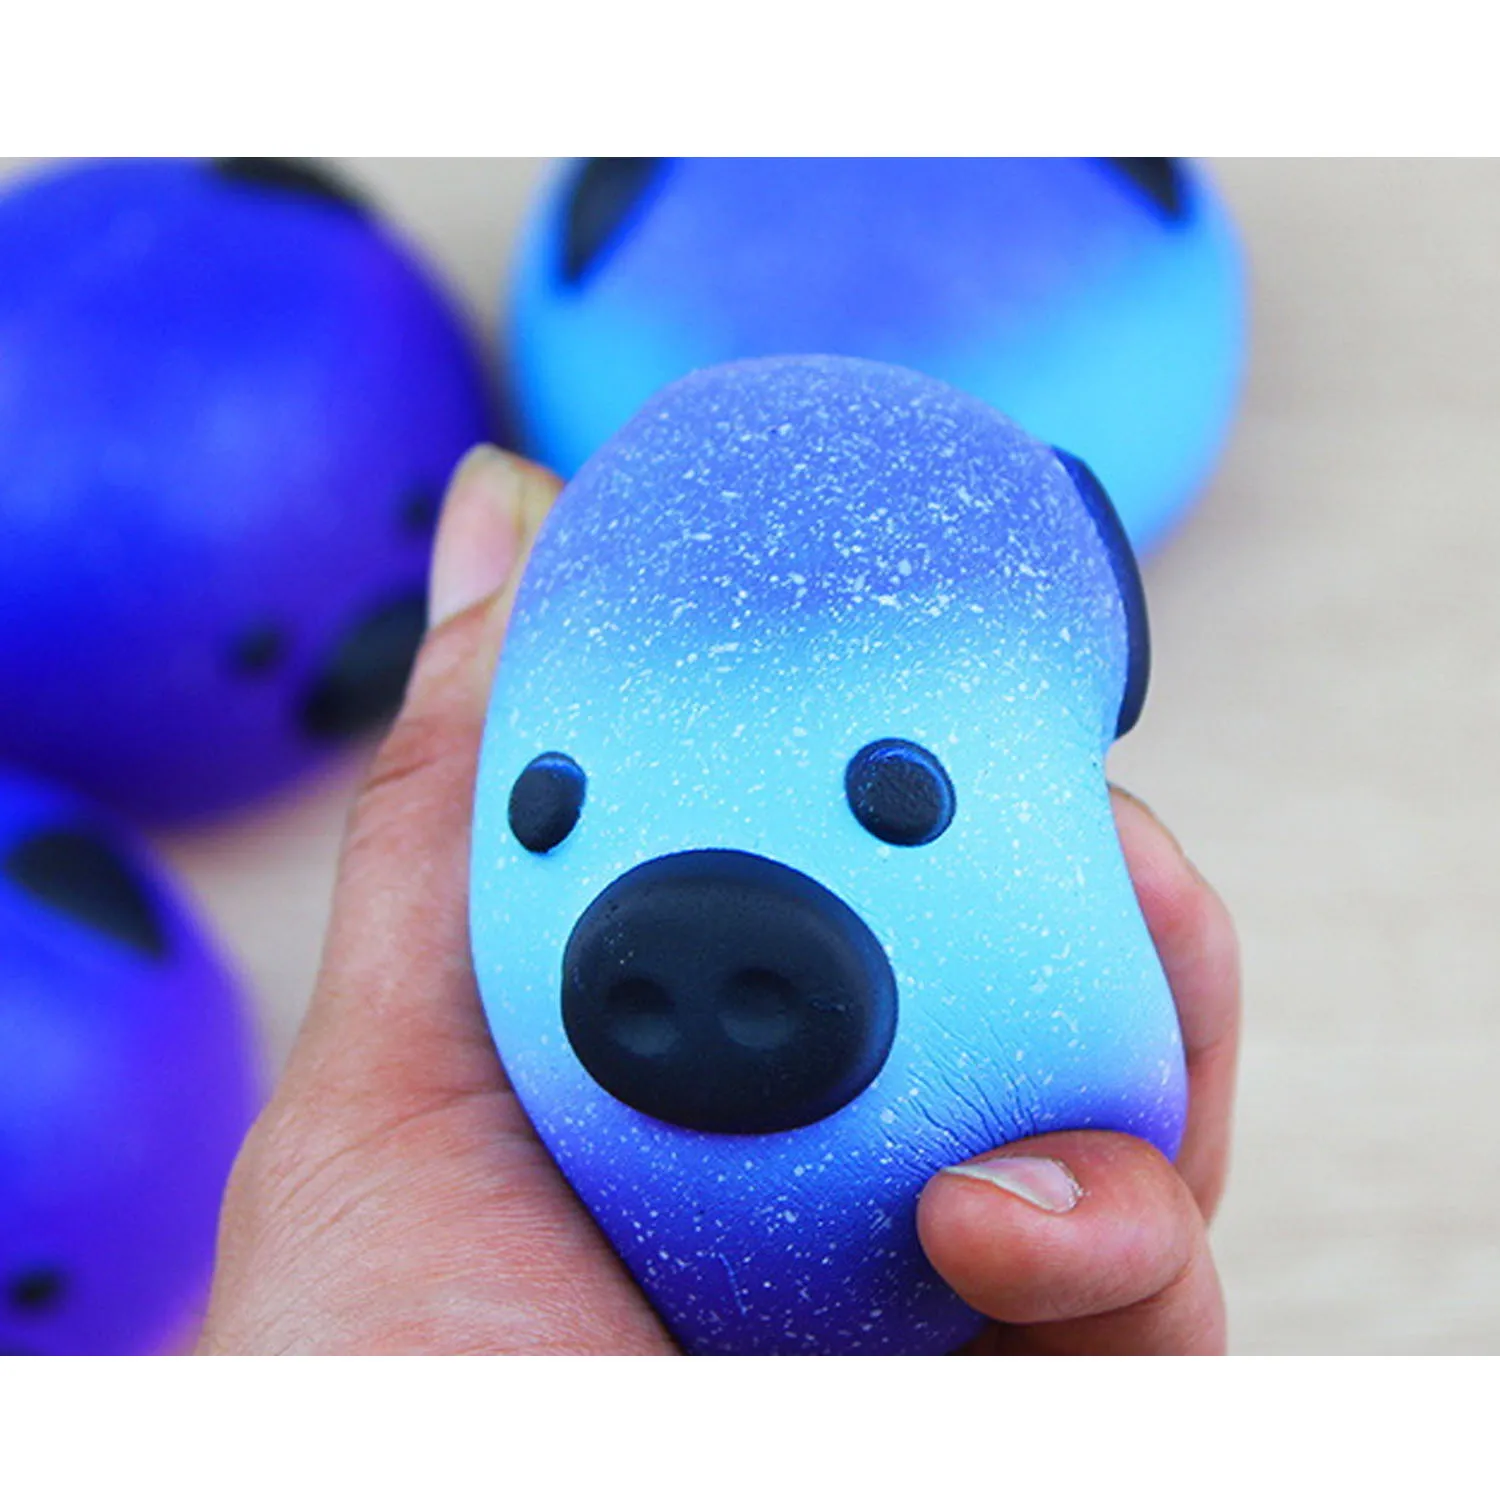 Besegad 8,5 см милый Kawaii панда поросенок стиль мягкое игрушка медленно поднимающаяся для детей взрослых снимает стресс беспокойство домашний